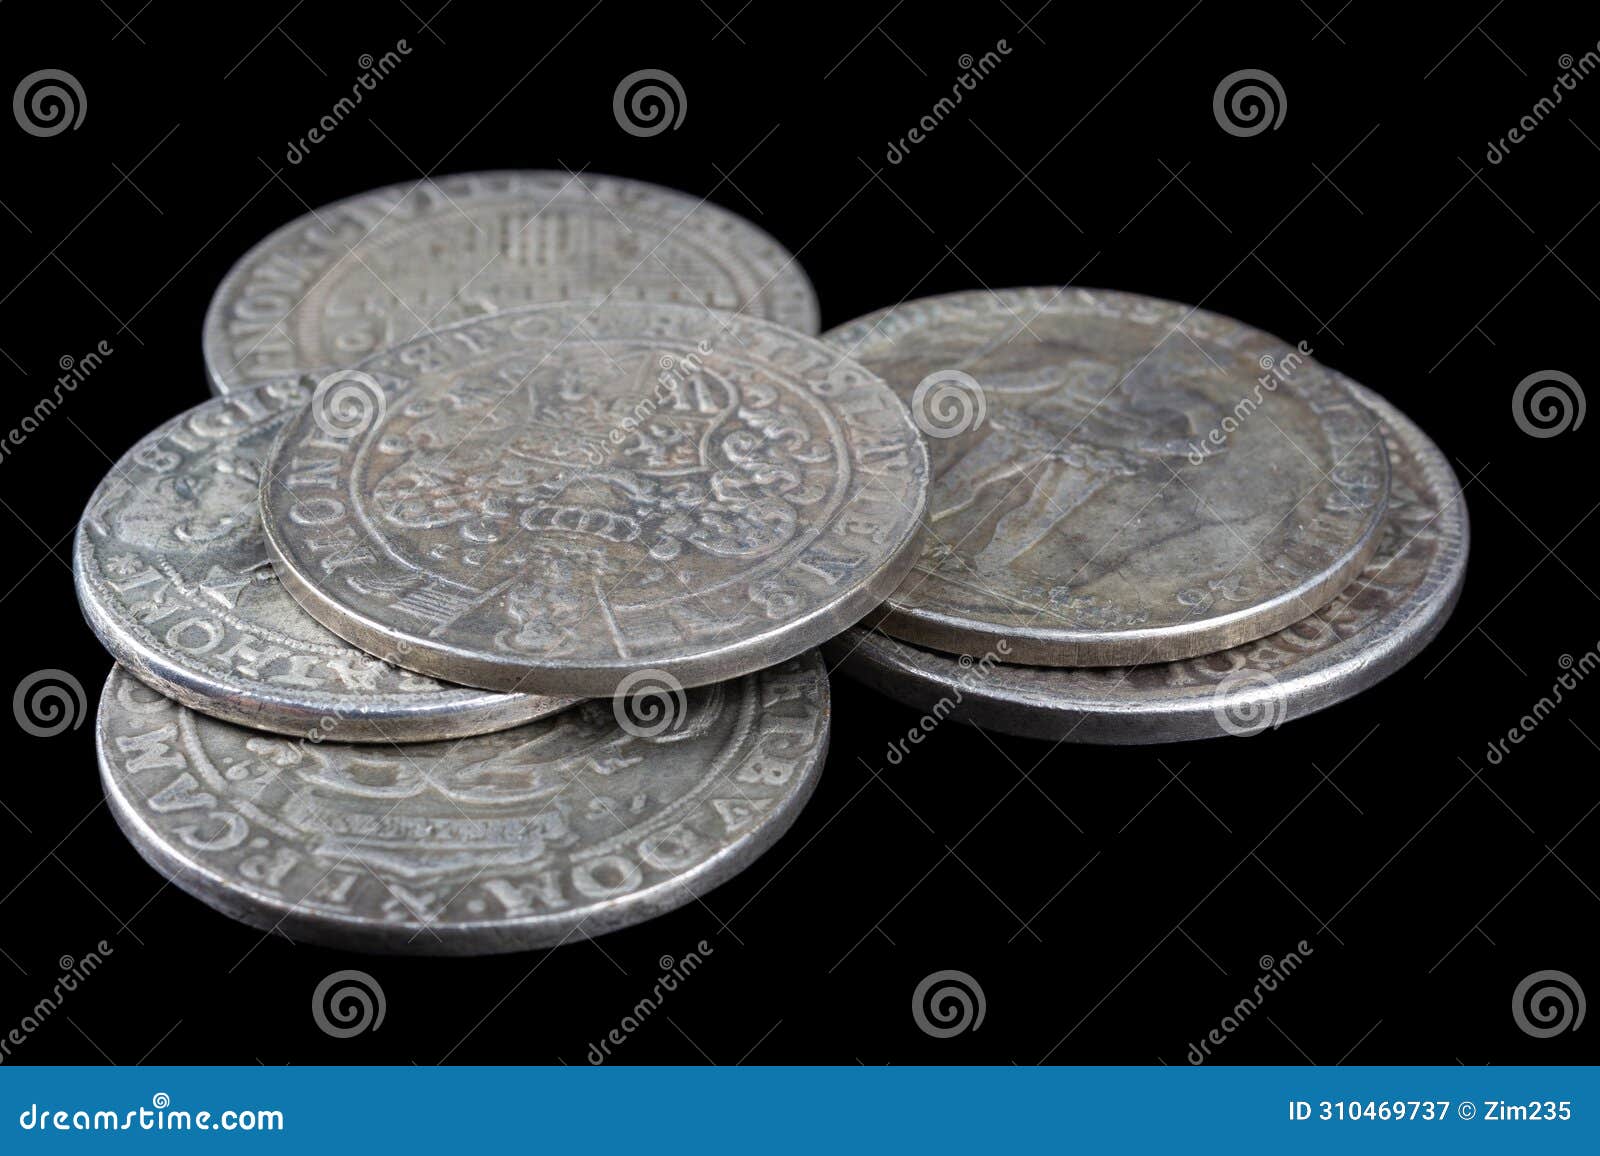 stack of old vintage silver medieval taller coins